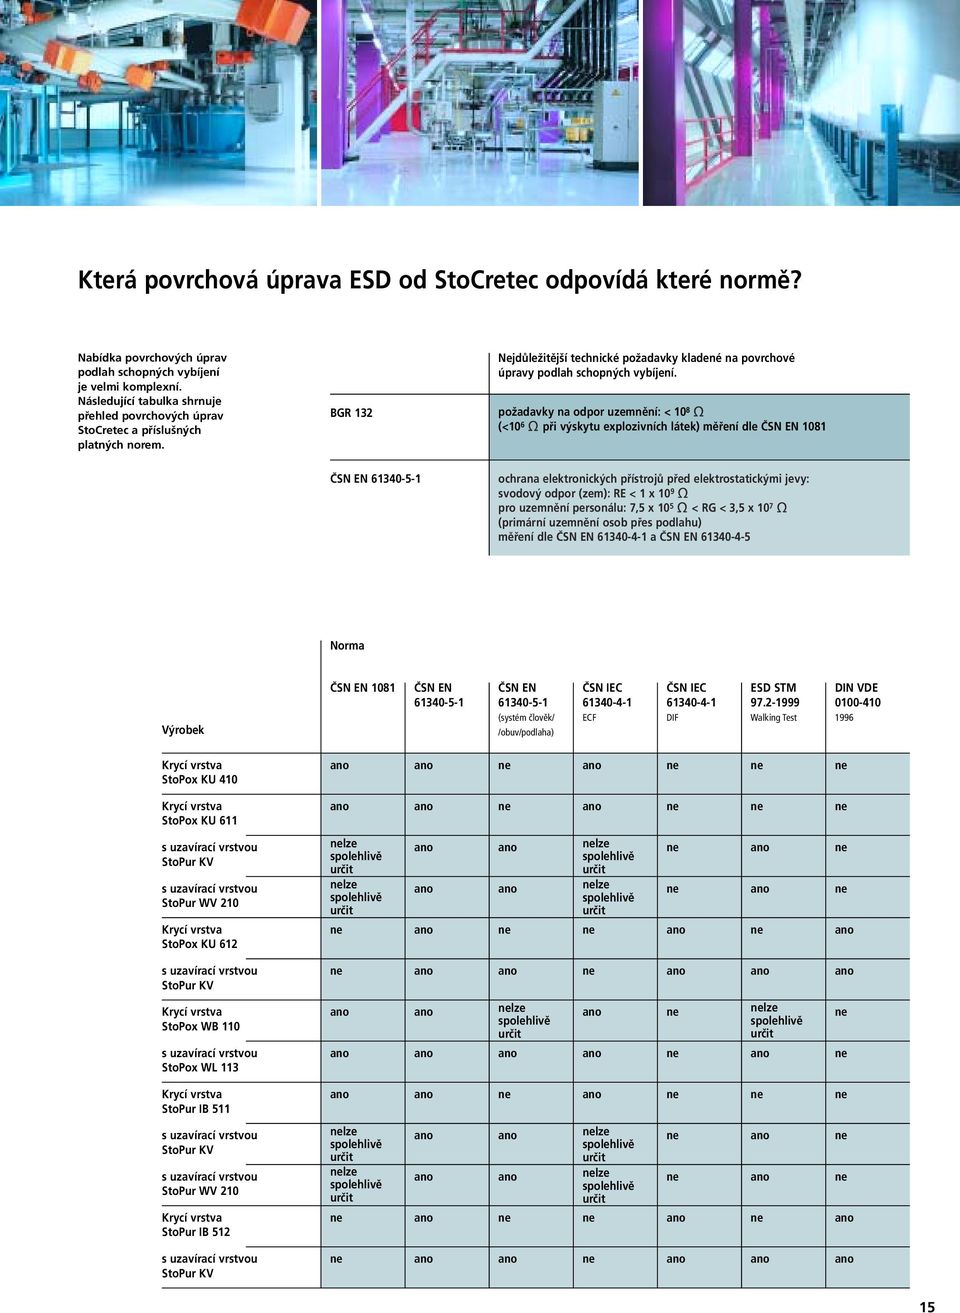 požadavky na odpor uzemnění: < 10 8 (<10 6 při výskytu explozivních látek) měření dle ČSN EN 1081 ČSN EN 61340-5-1 ochrana elektronických přístrojů před elektrostatickými jevy: svodový odpor (zem):